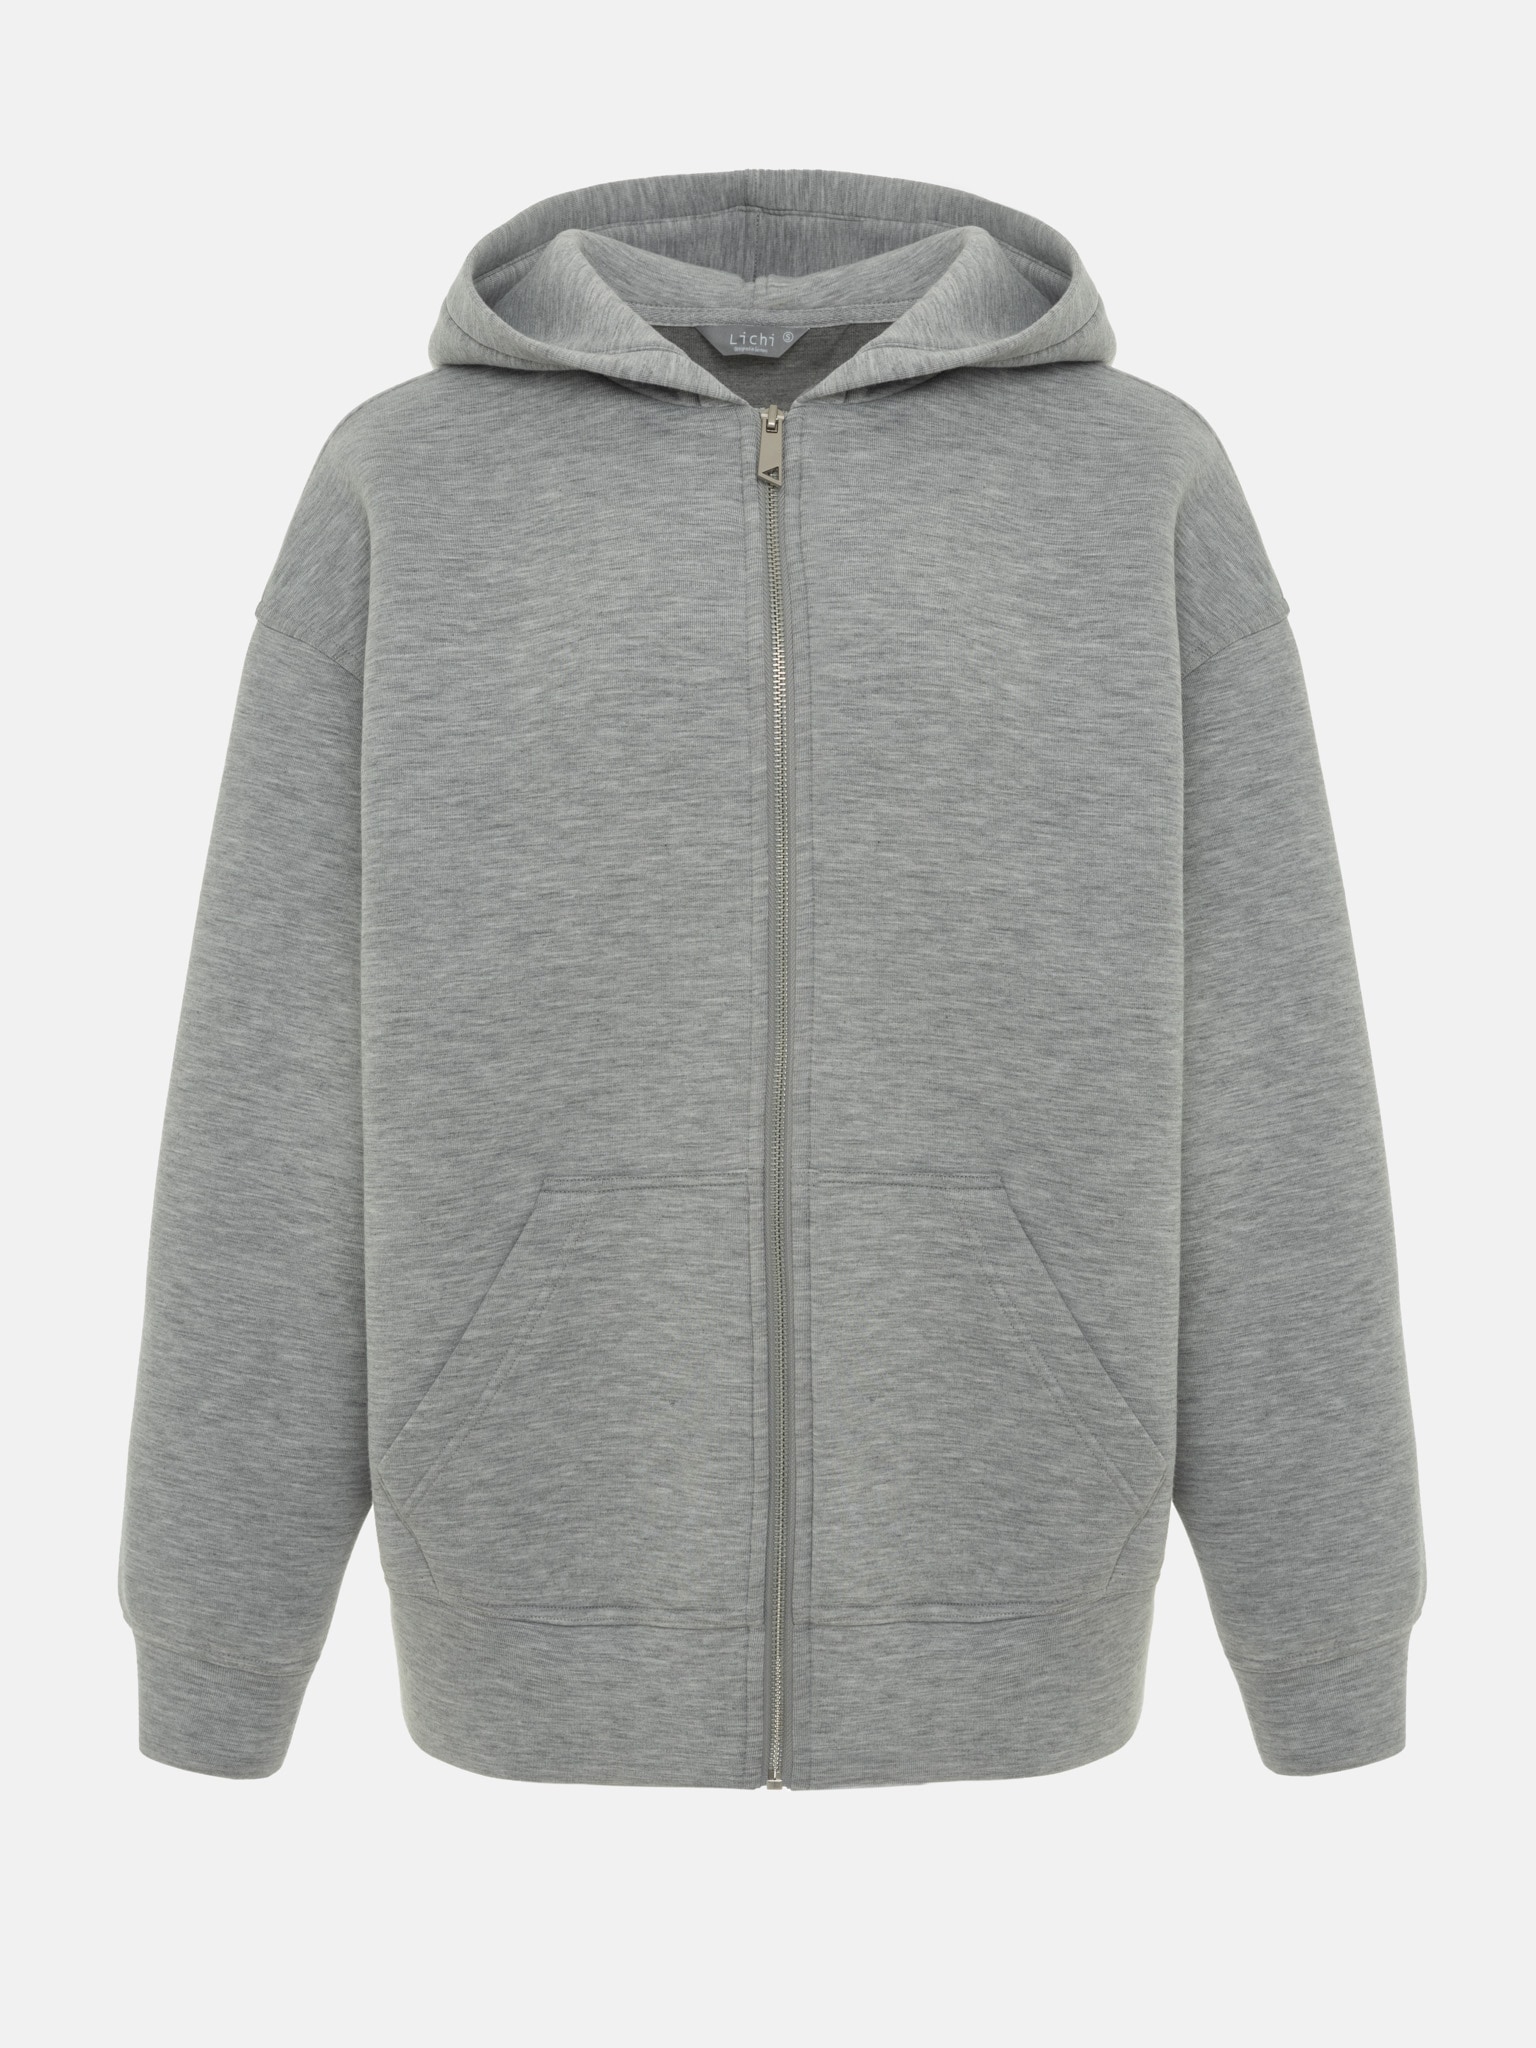 Oversized zip-up hoodie